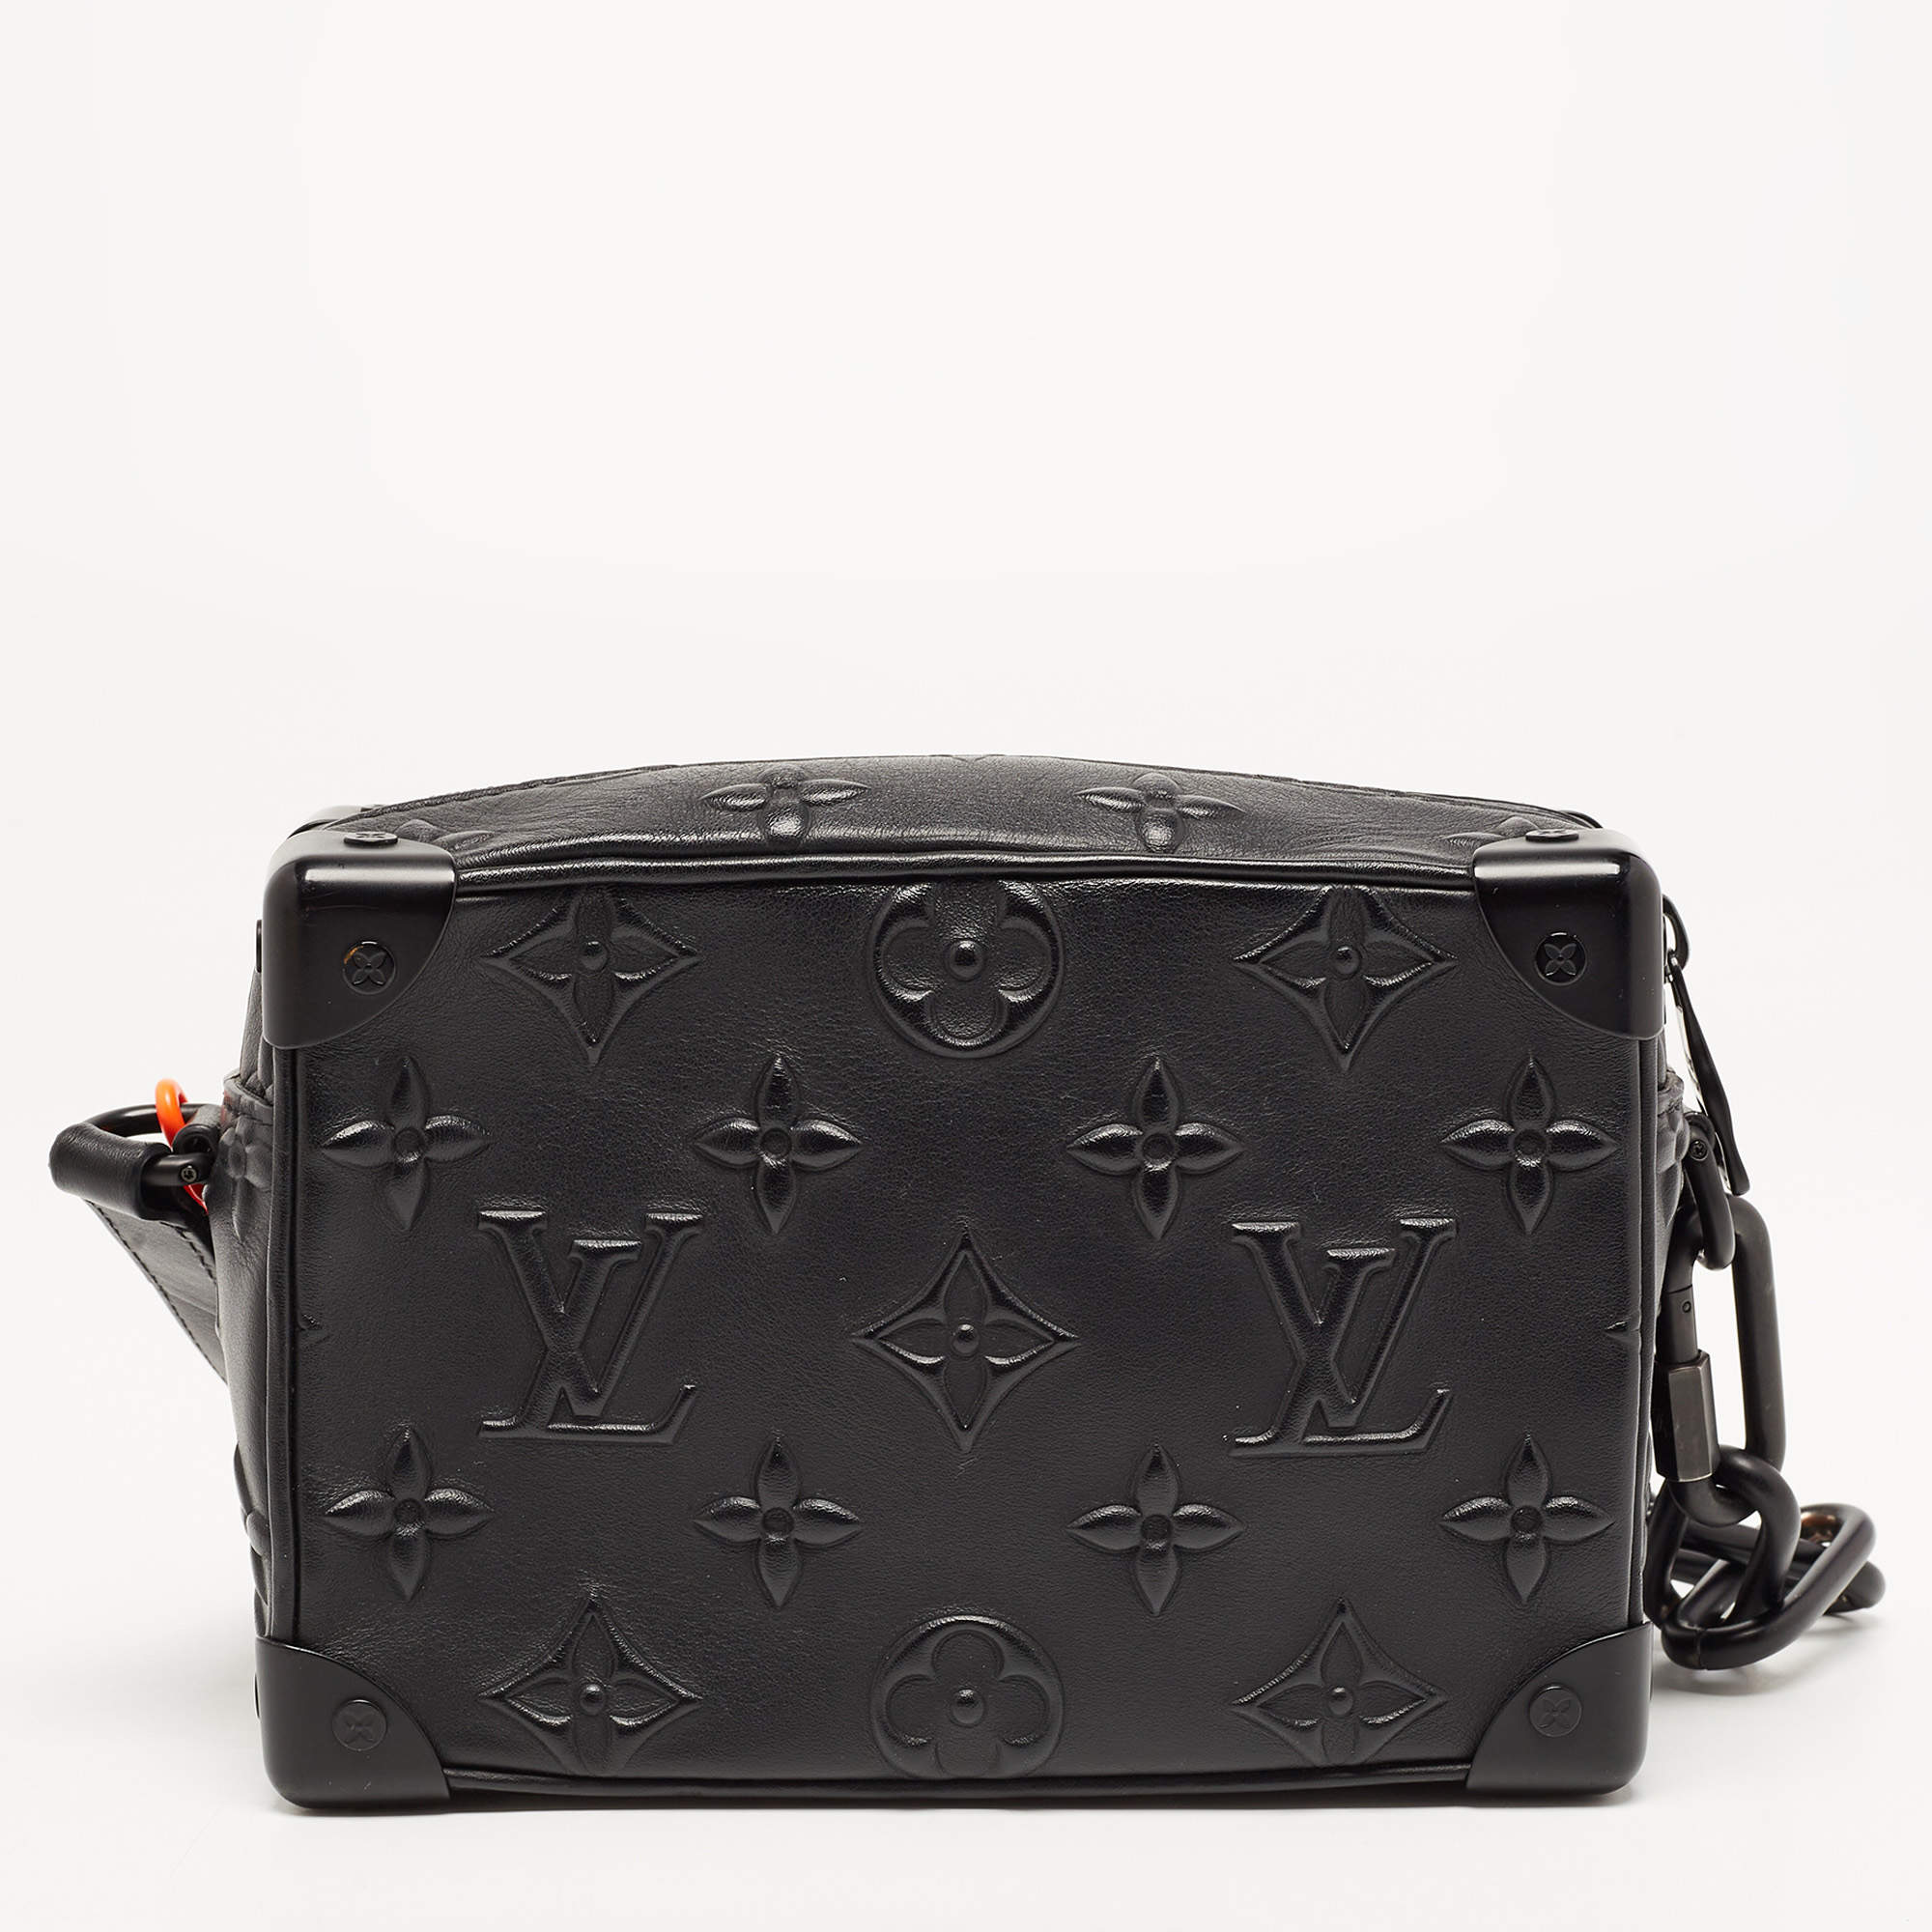 Petit noé trunk leather handbag Louis Vuitton Black in Leather - 26051032